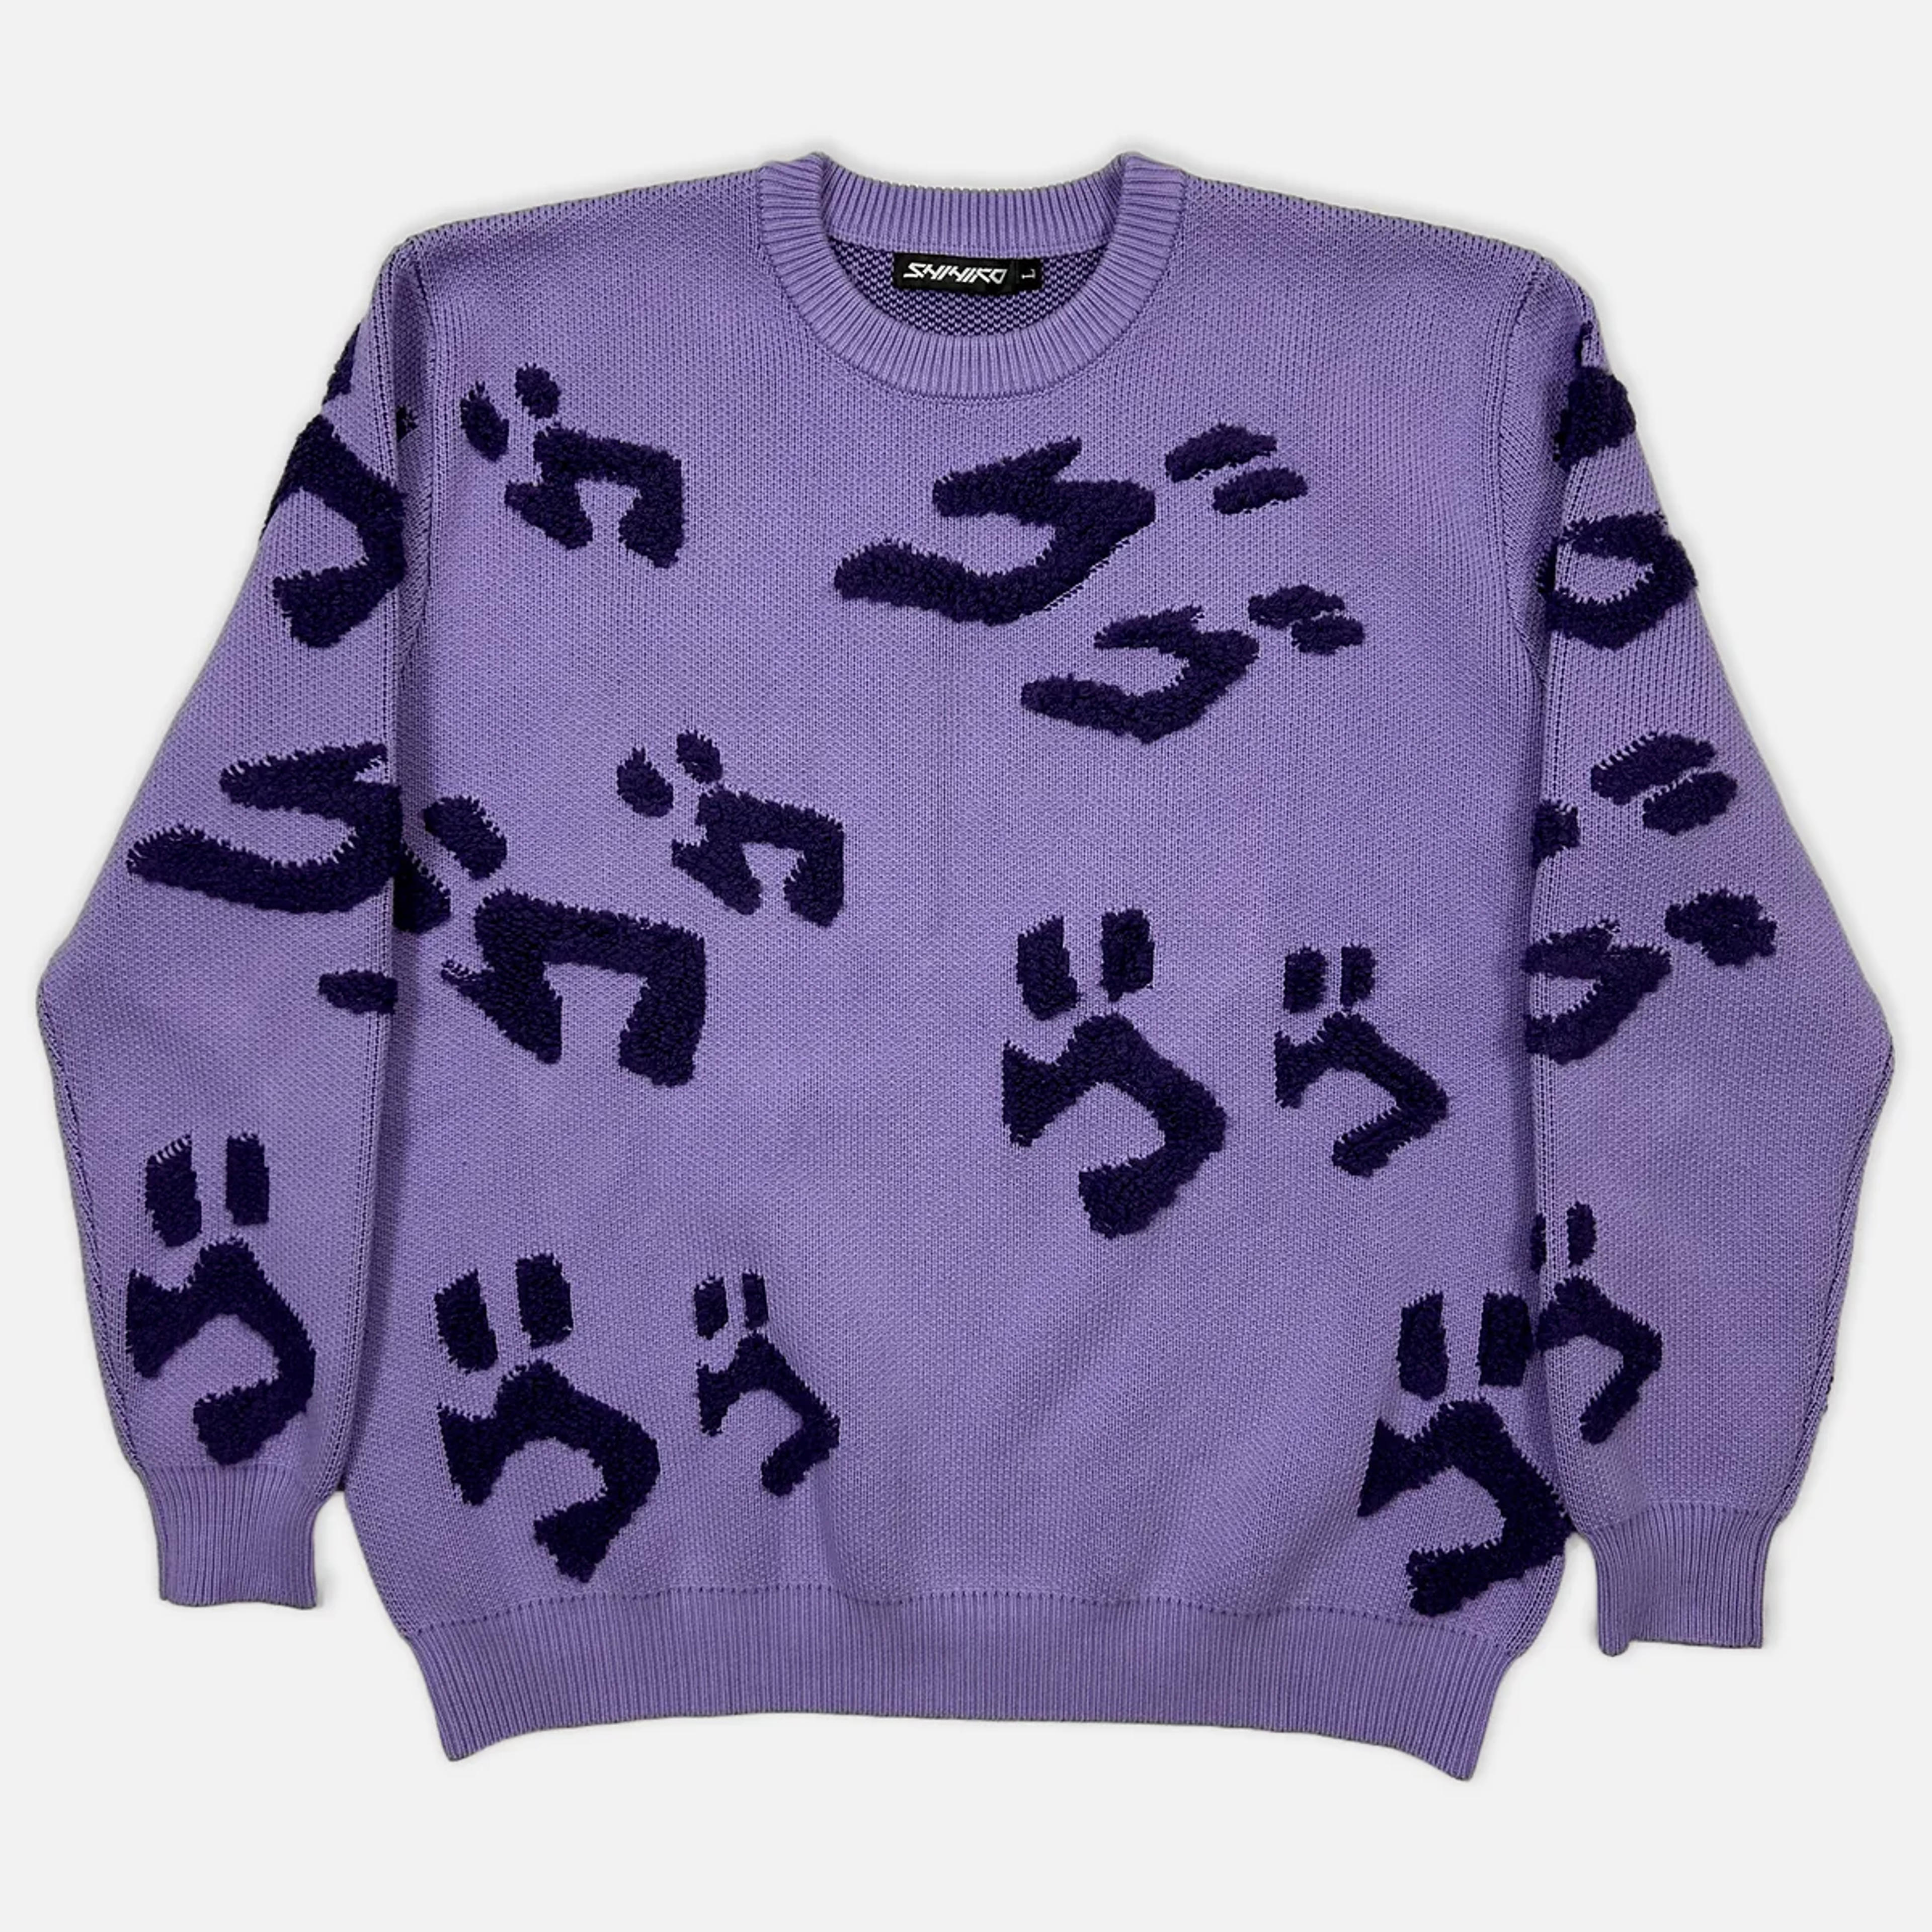 *PRE-ORDER* Jojo's Menacing / ゴゴゴ Knit Sweater – Shihiko